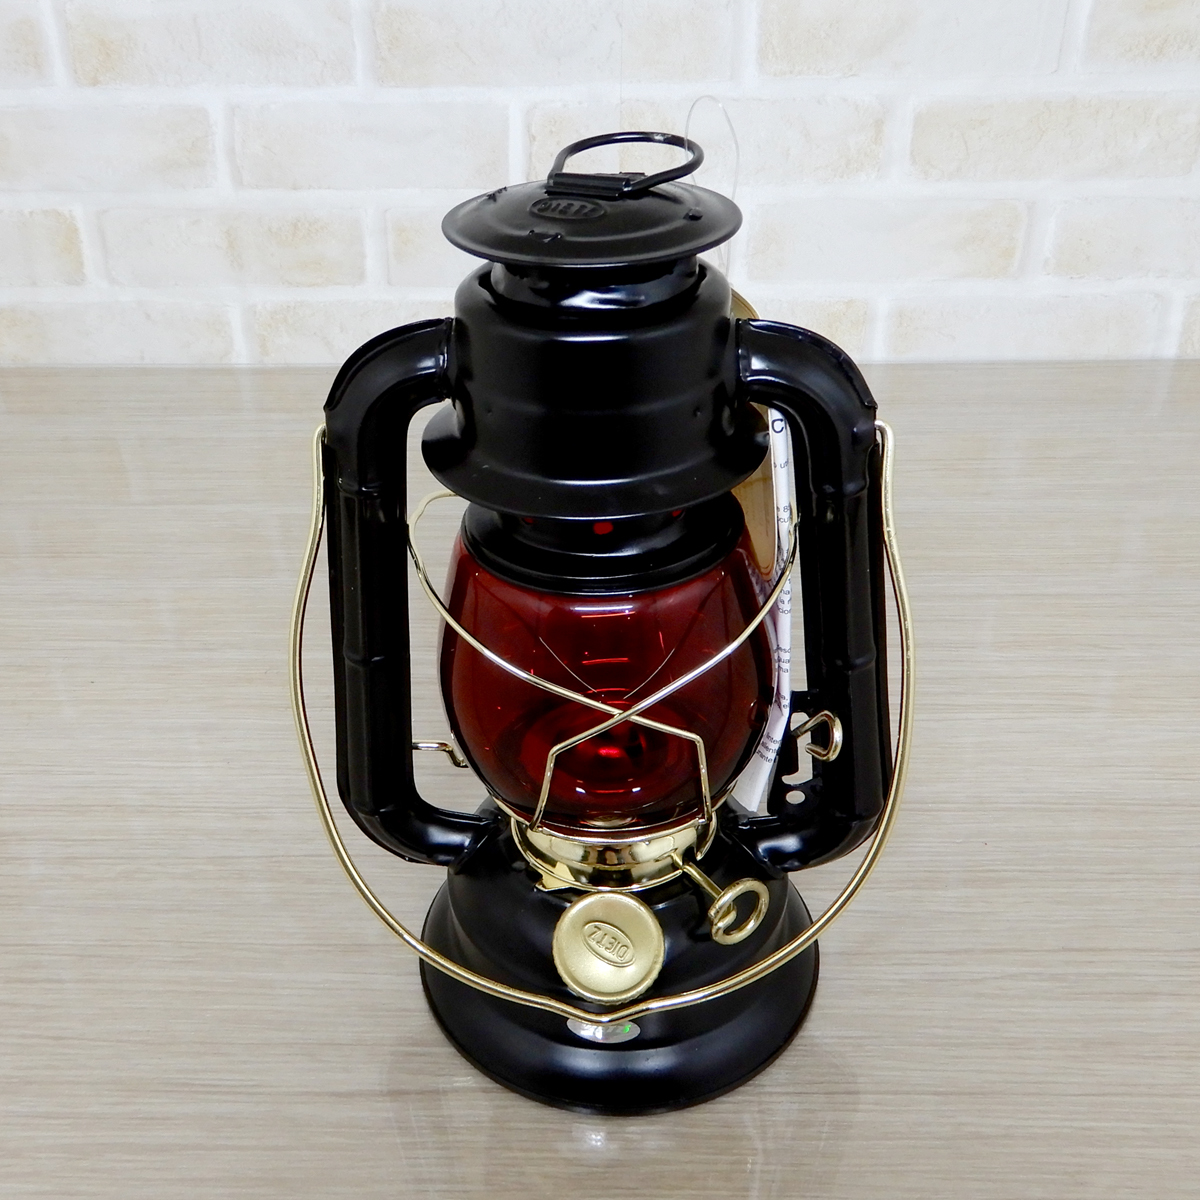 替芯付【送料無料】新品 Dietz #50 Comet Lantern - Black Gold Redグローブ ◇デイツ コメット ブラック ハリケーンランタン 黒金 真鍮 赤